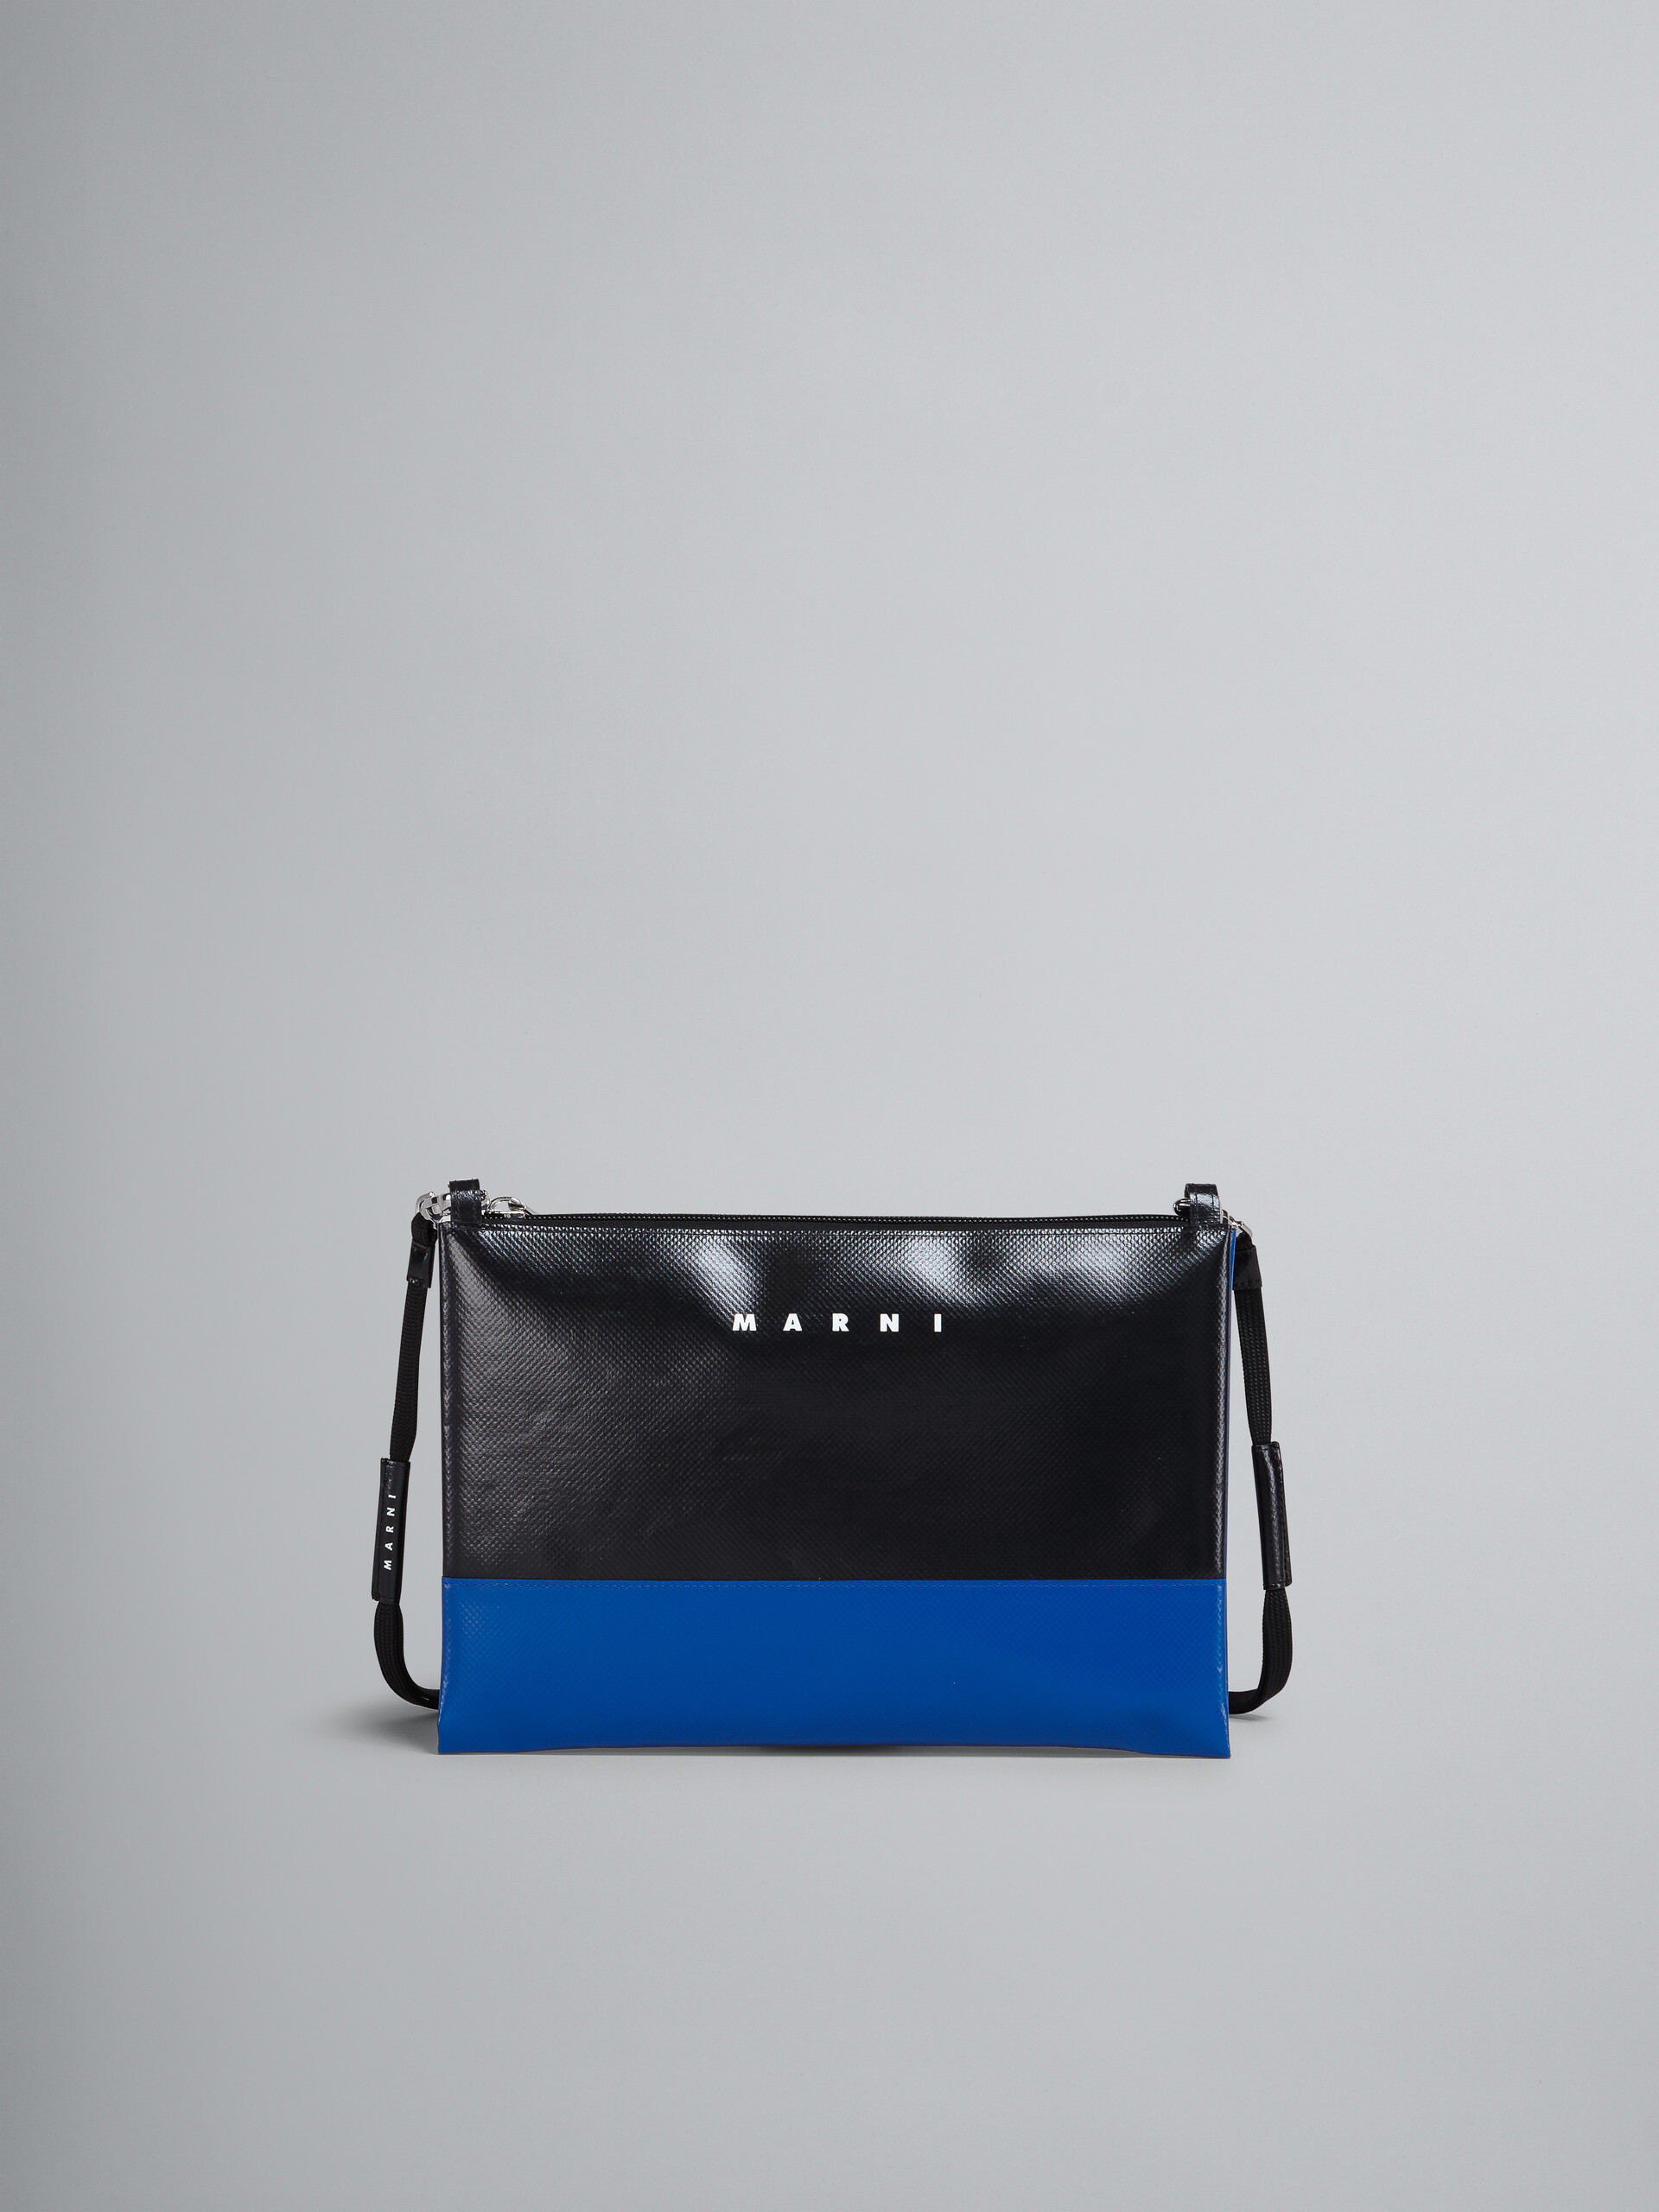 Black and blue TRIBECA crossbody bag - Shoulder Bag - Image 1